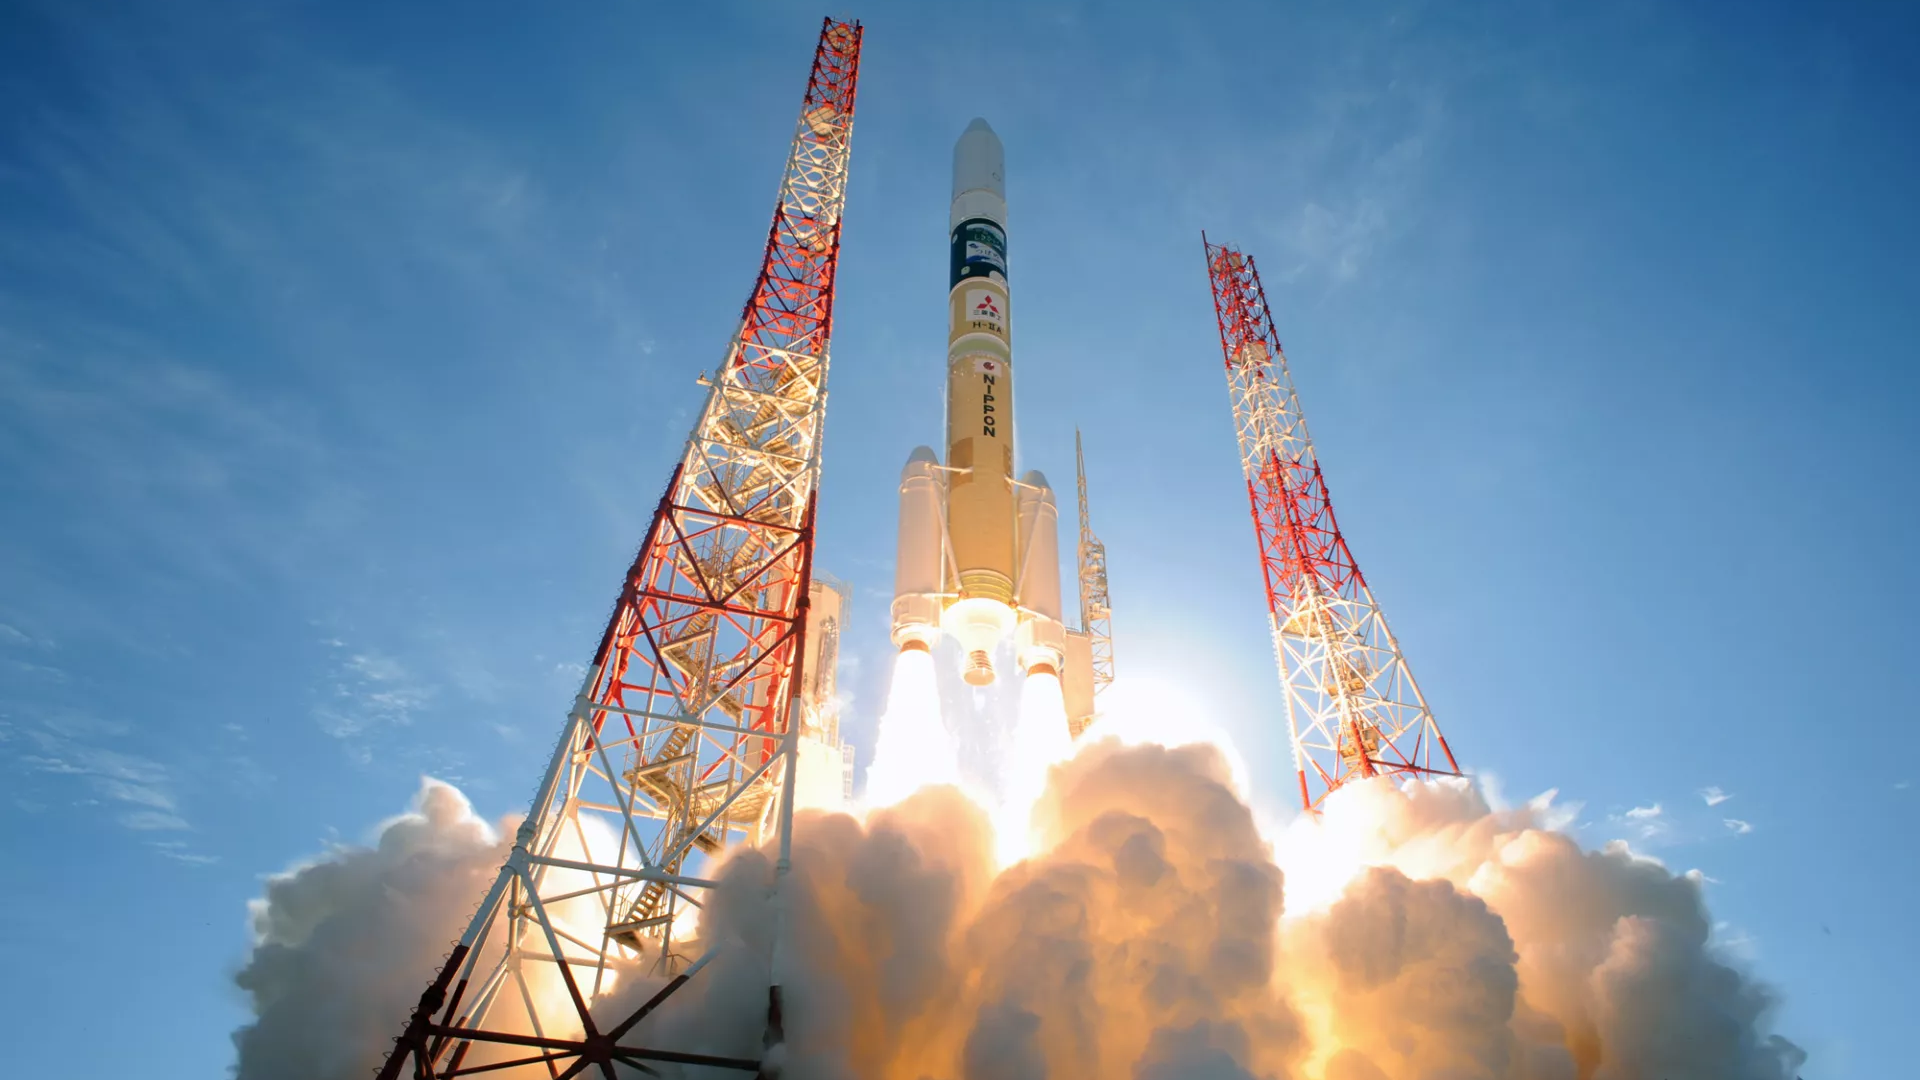 ญี่ปุ่นกำลังจะปล่อยดาวเทียมลาดตระเวนเรดาร์ IGS-Radar 7